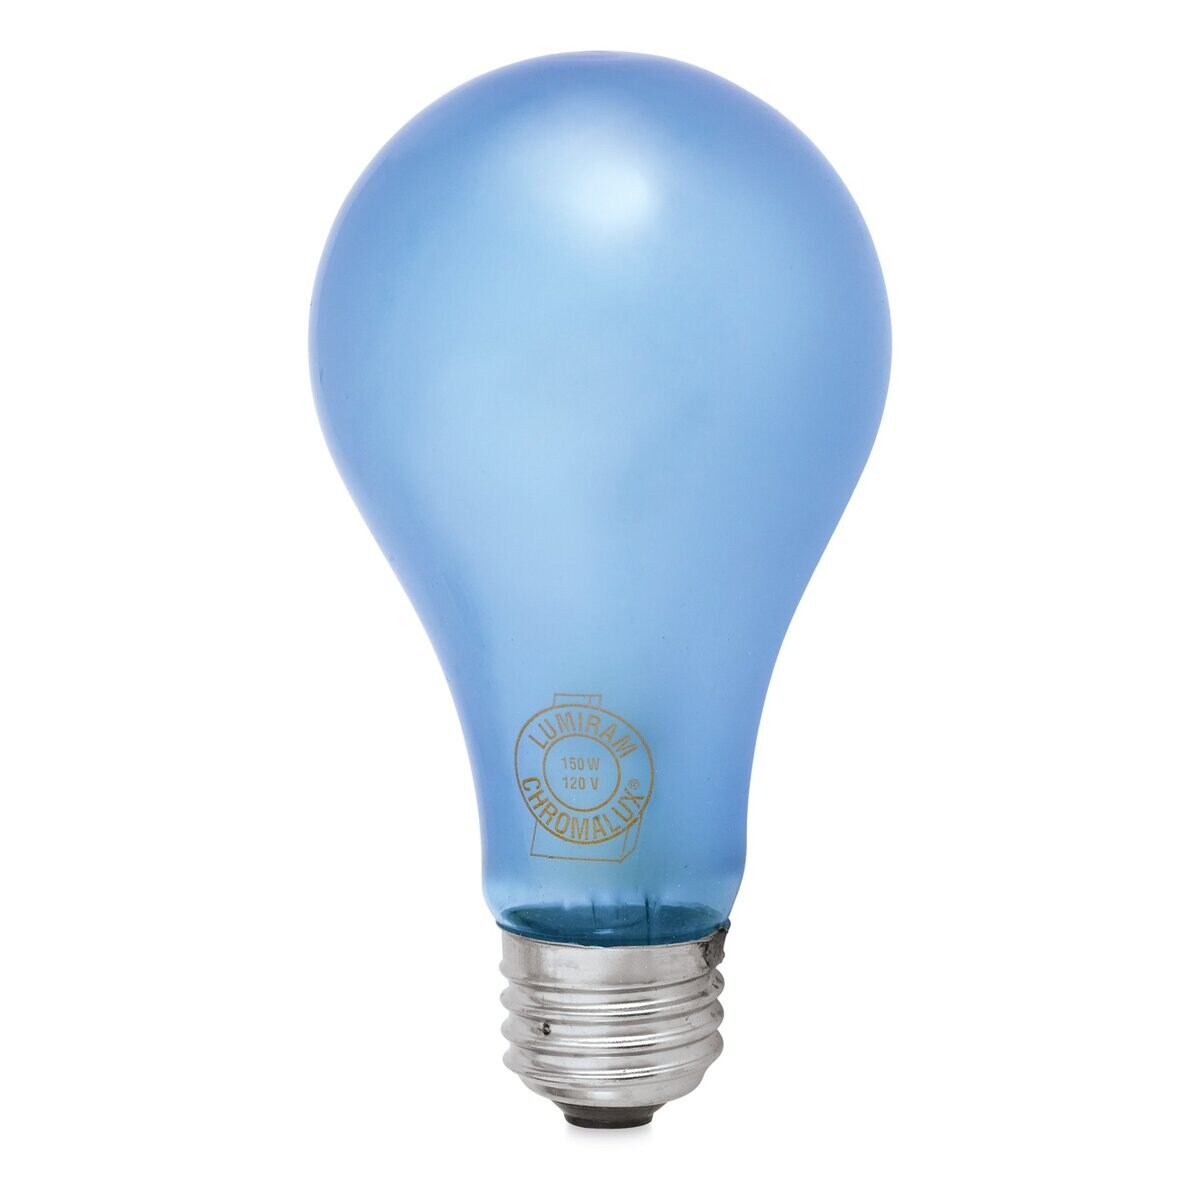 Chromalux Full Spectrum Incandescent Light Bulb - 150W